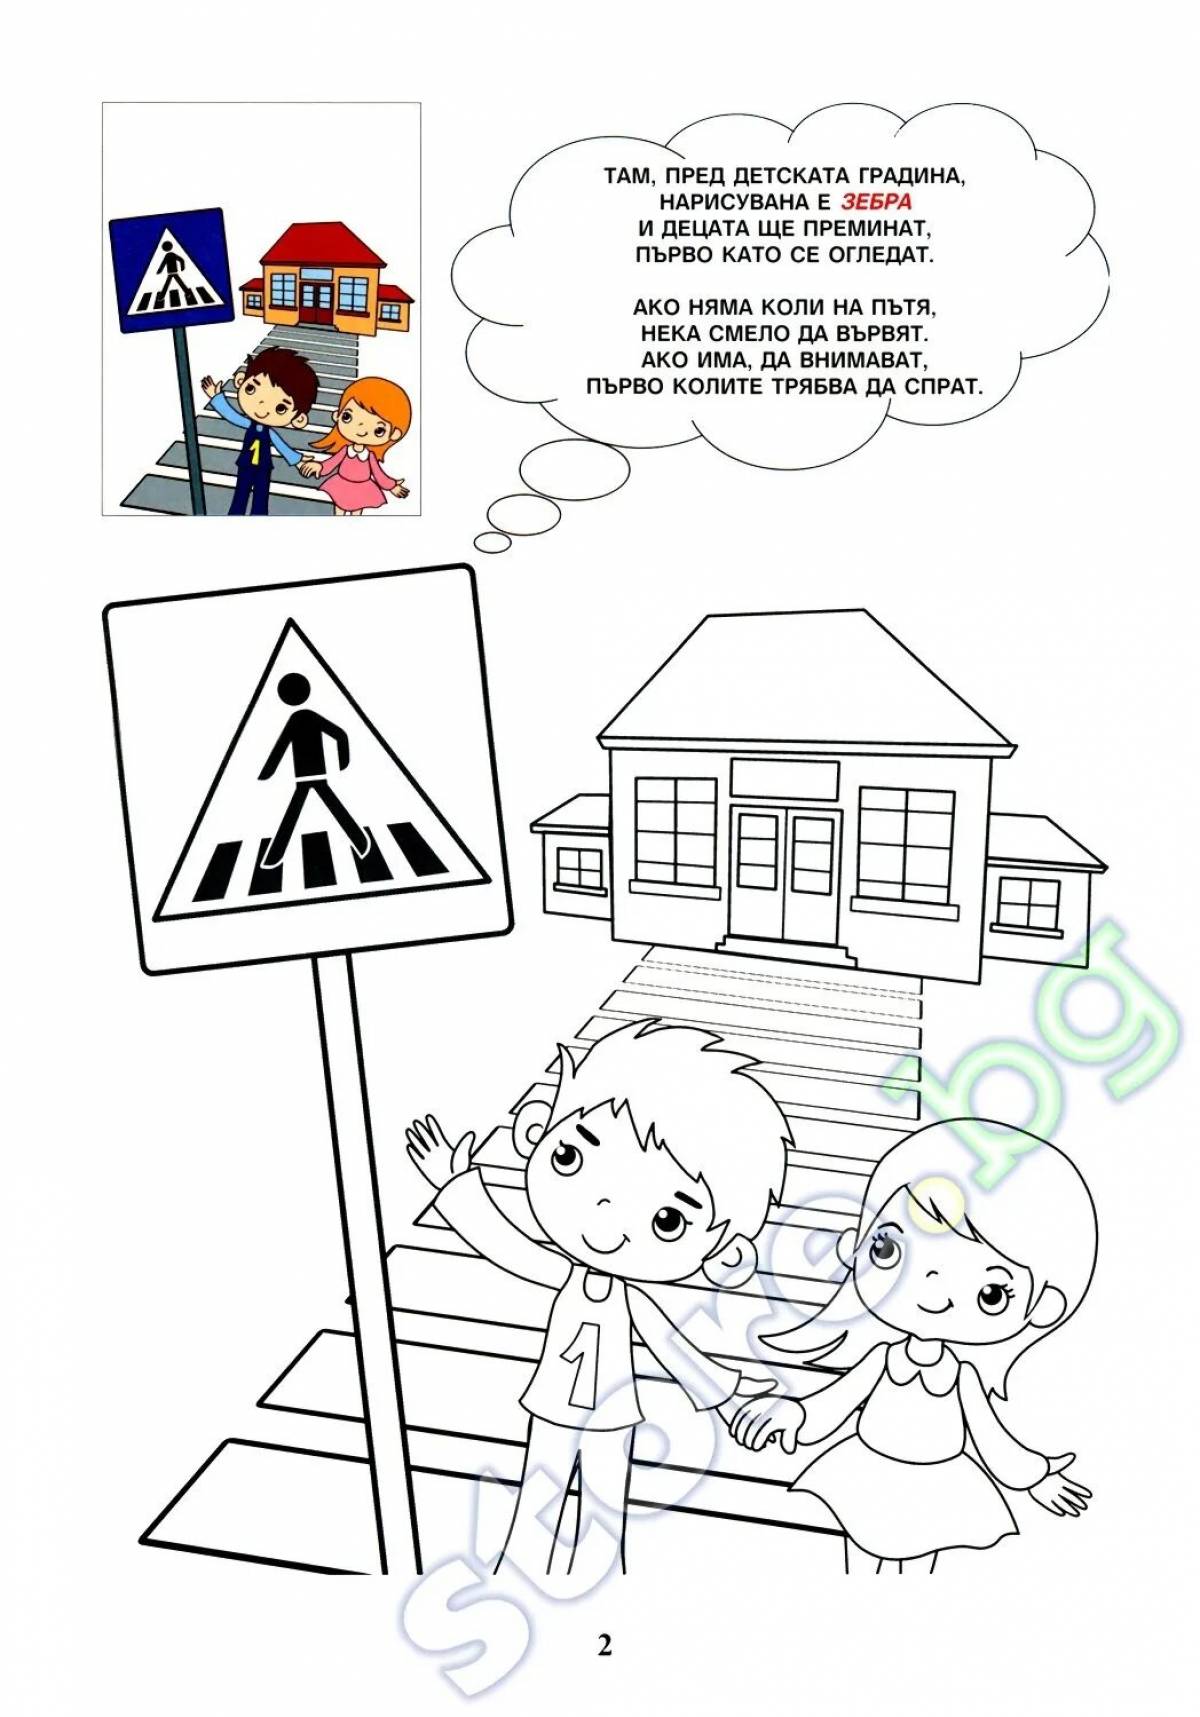 Информативный плакат о правилах дорожного движения